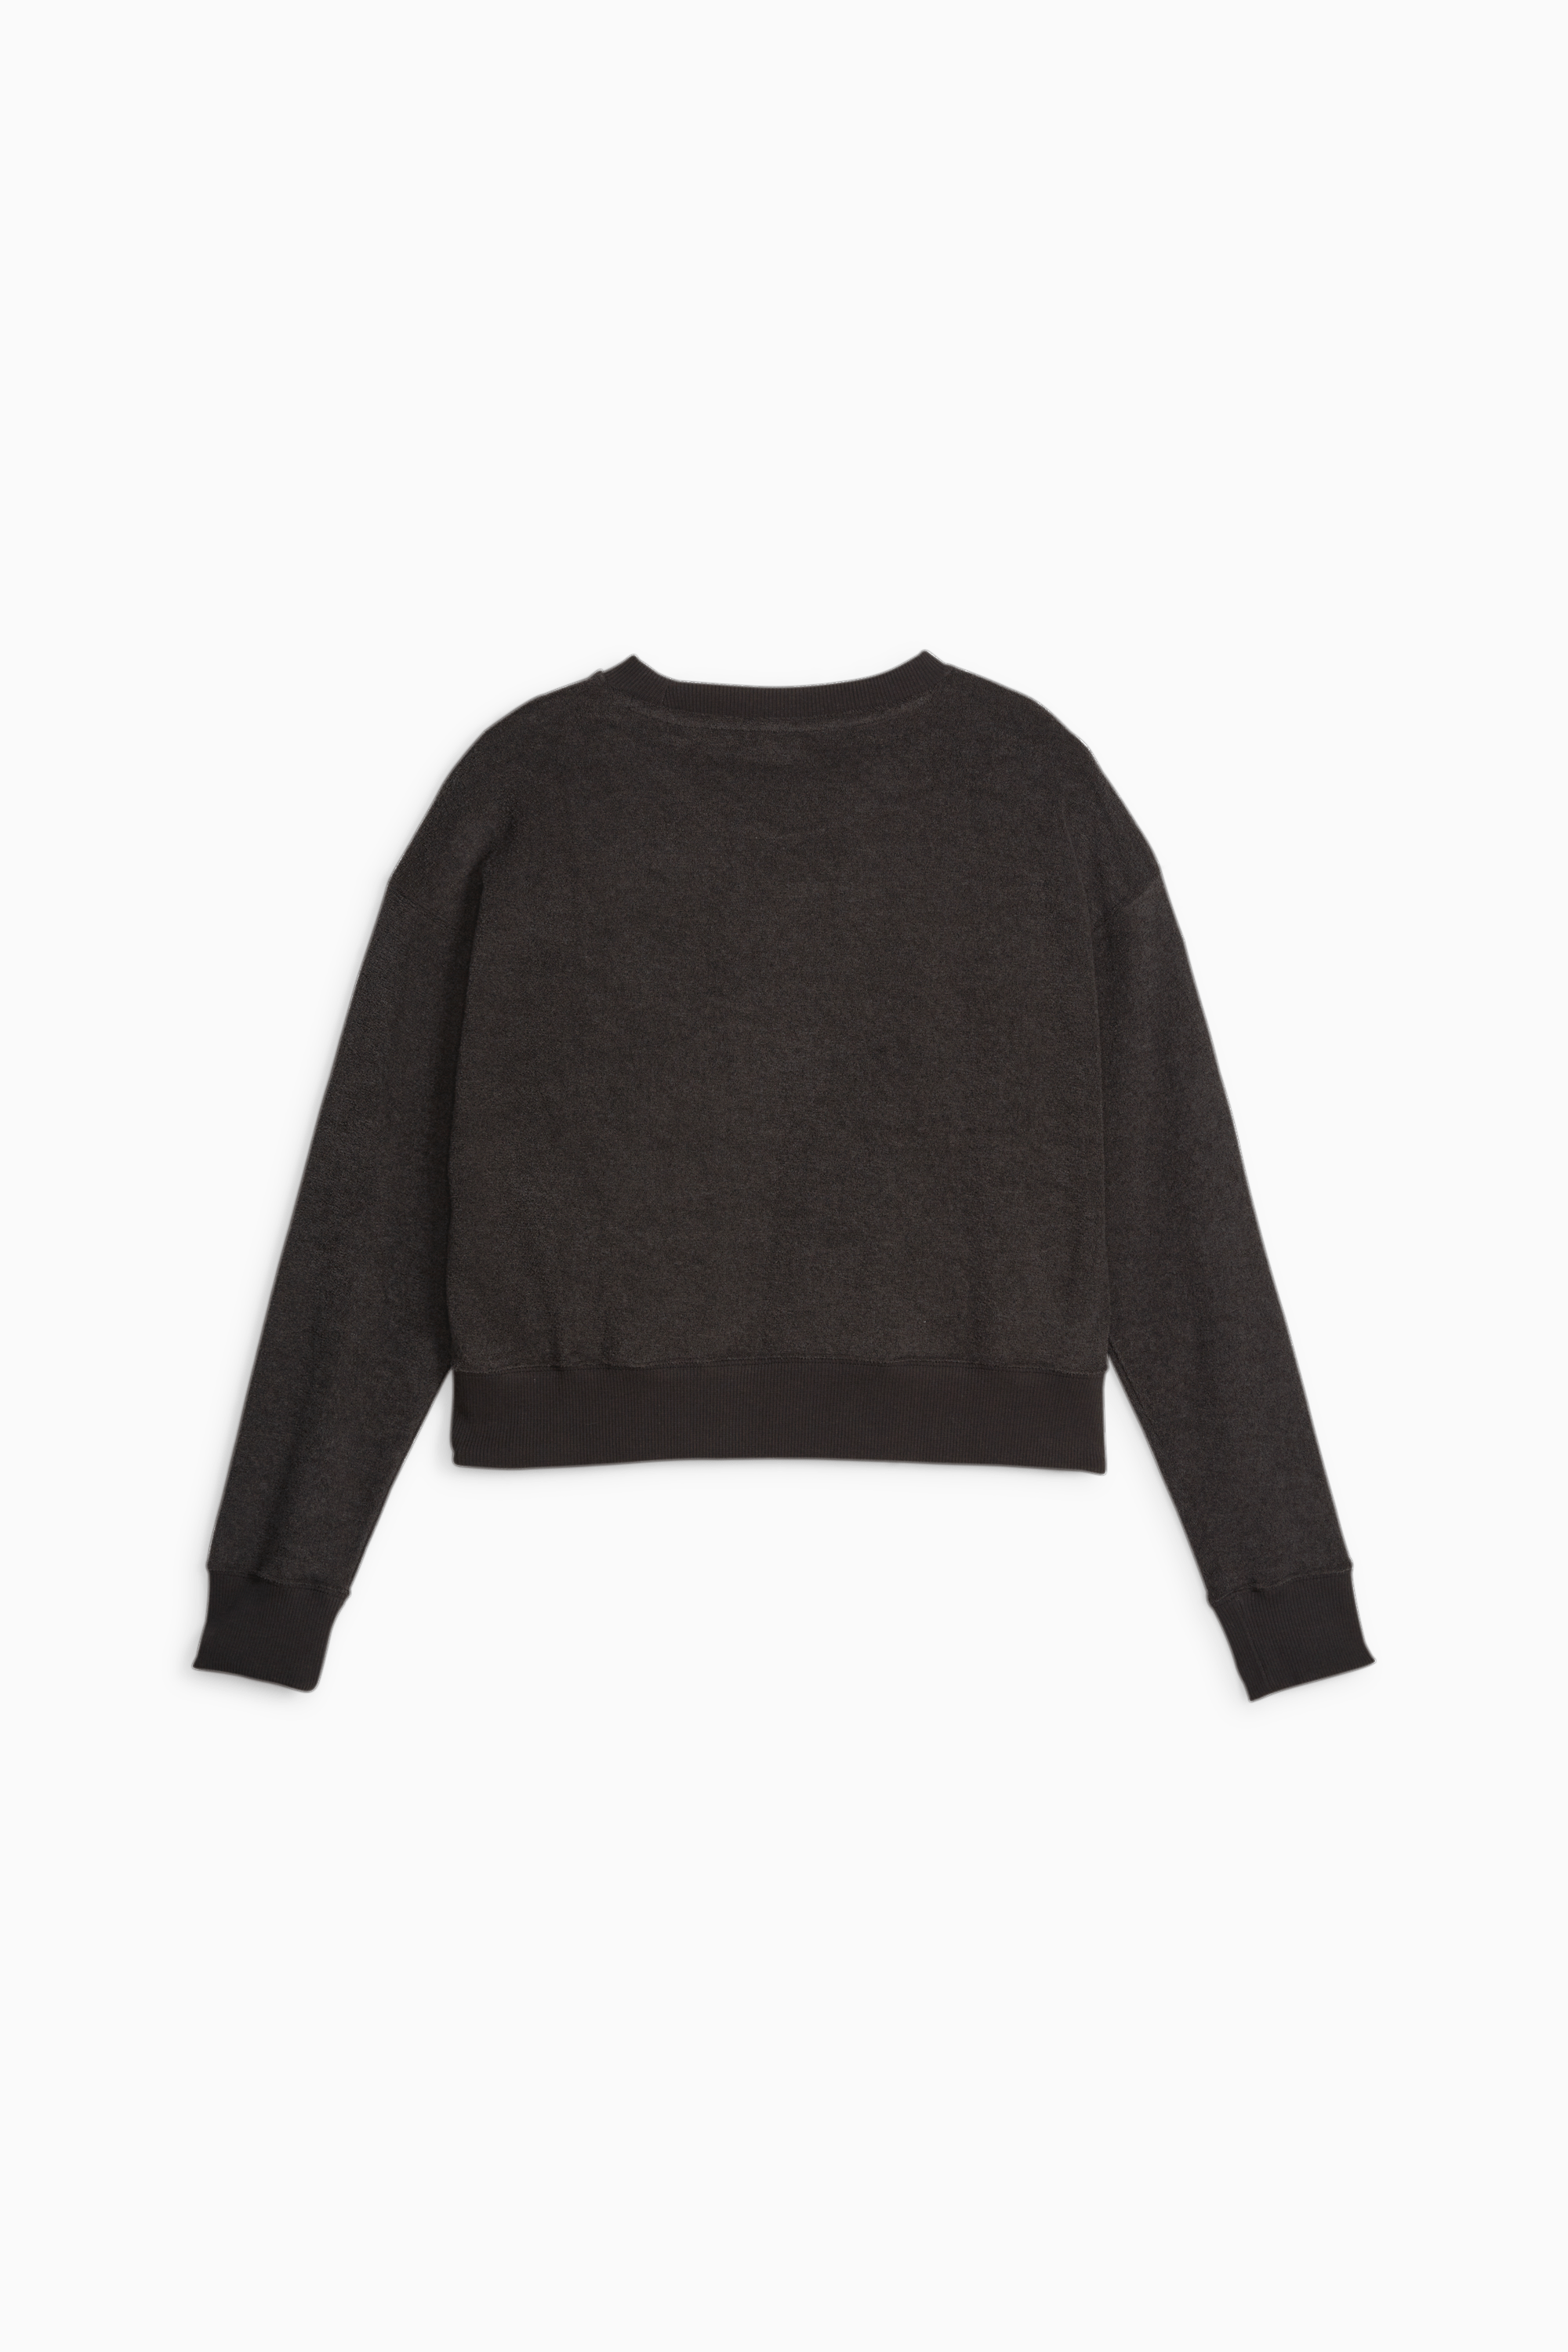 T-shirt Sweater Crop top Clothing, T-shirt, zipper, woman png